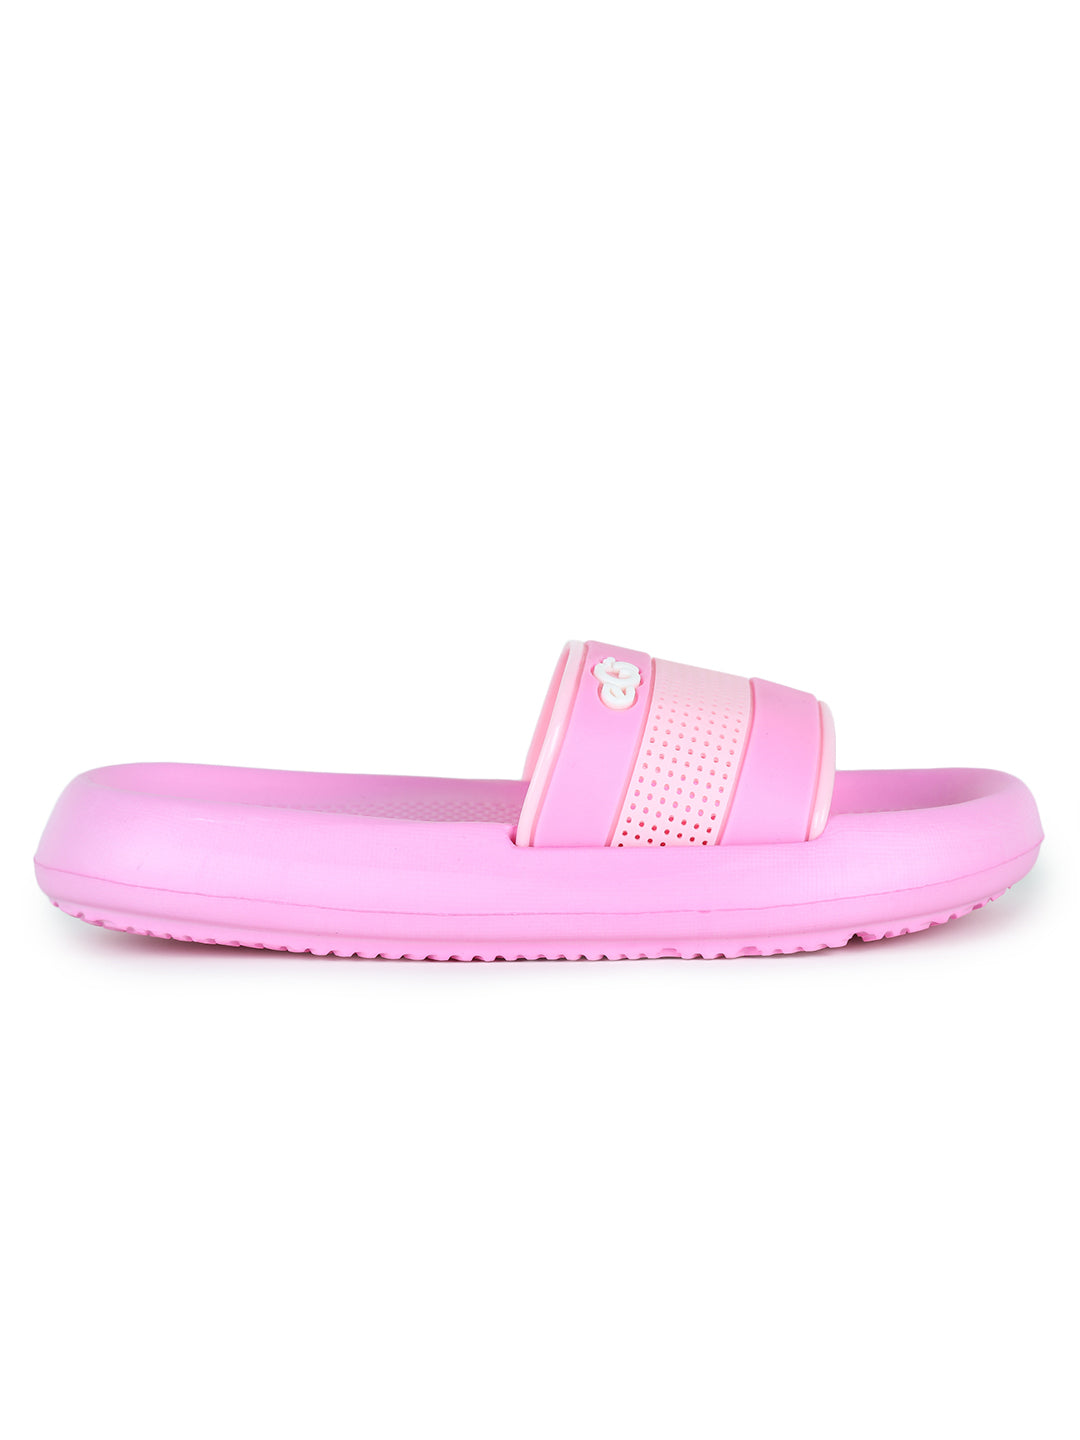 Footwear, Boys Footwear, Girls Footwear, Pink Slides